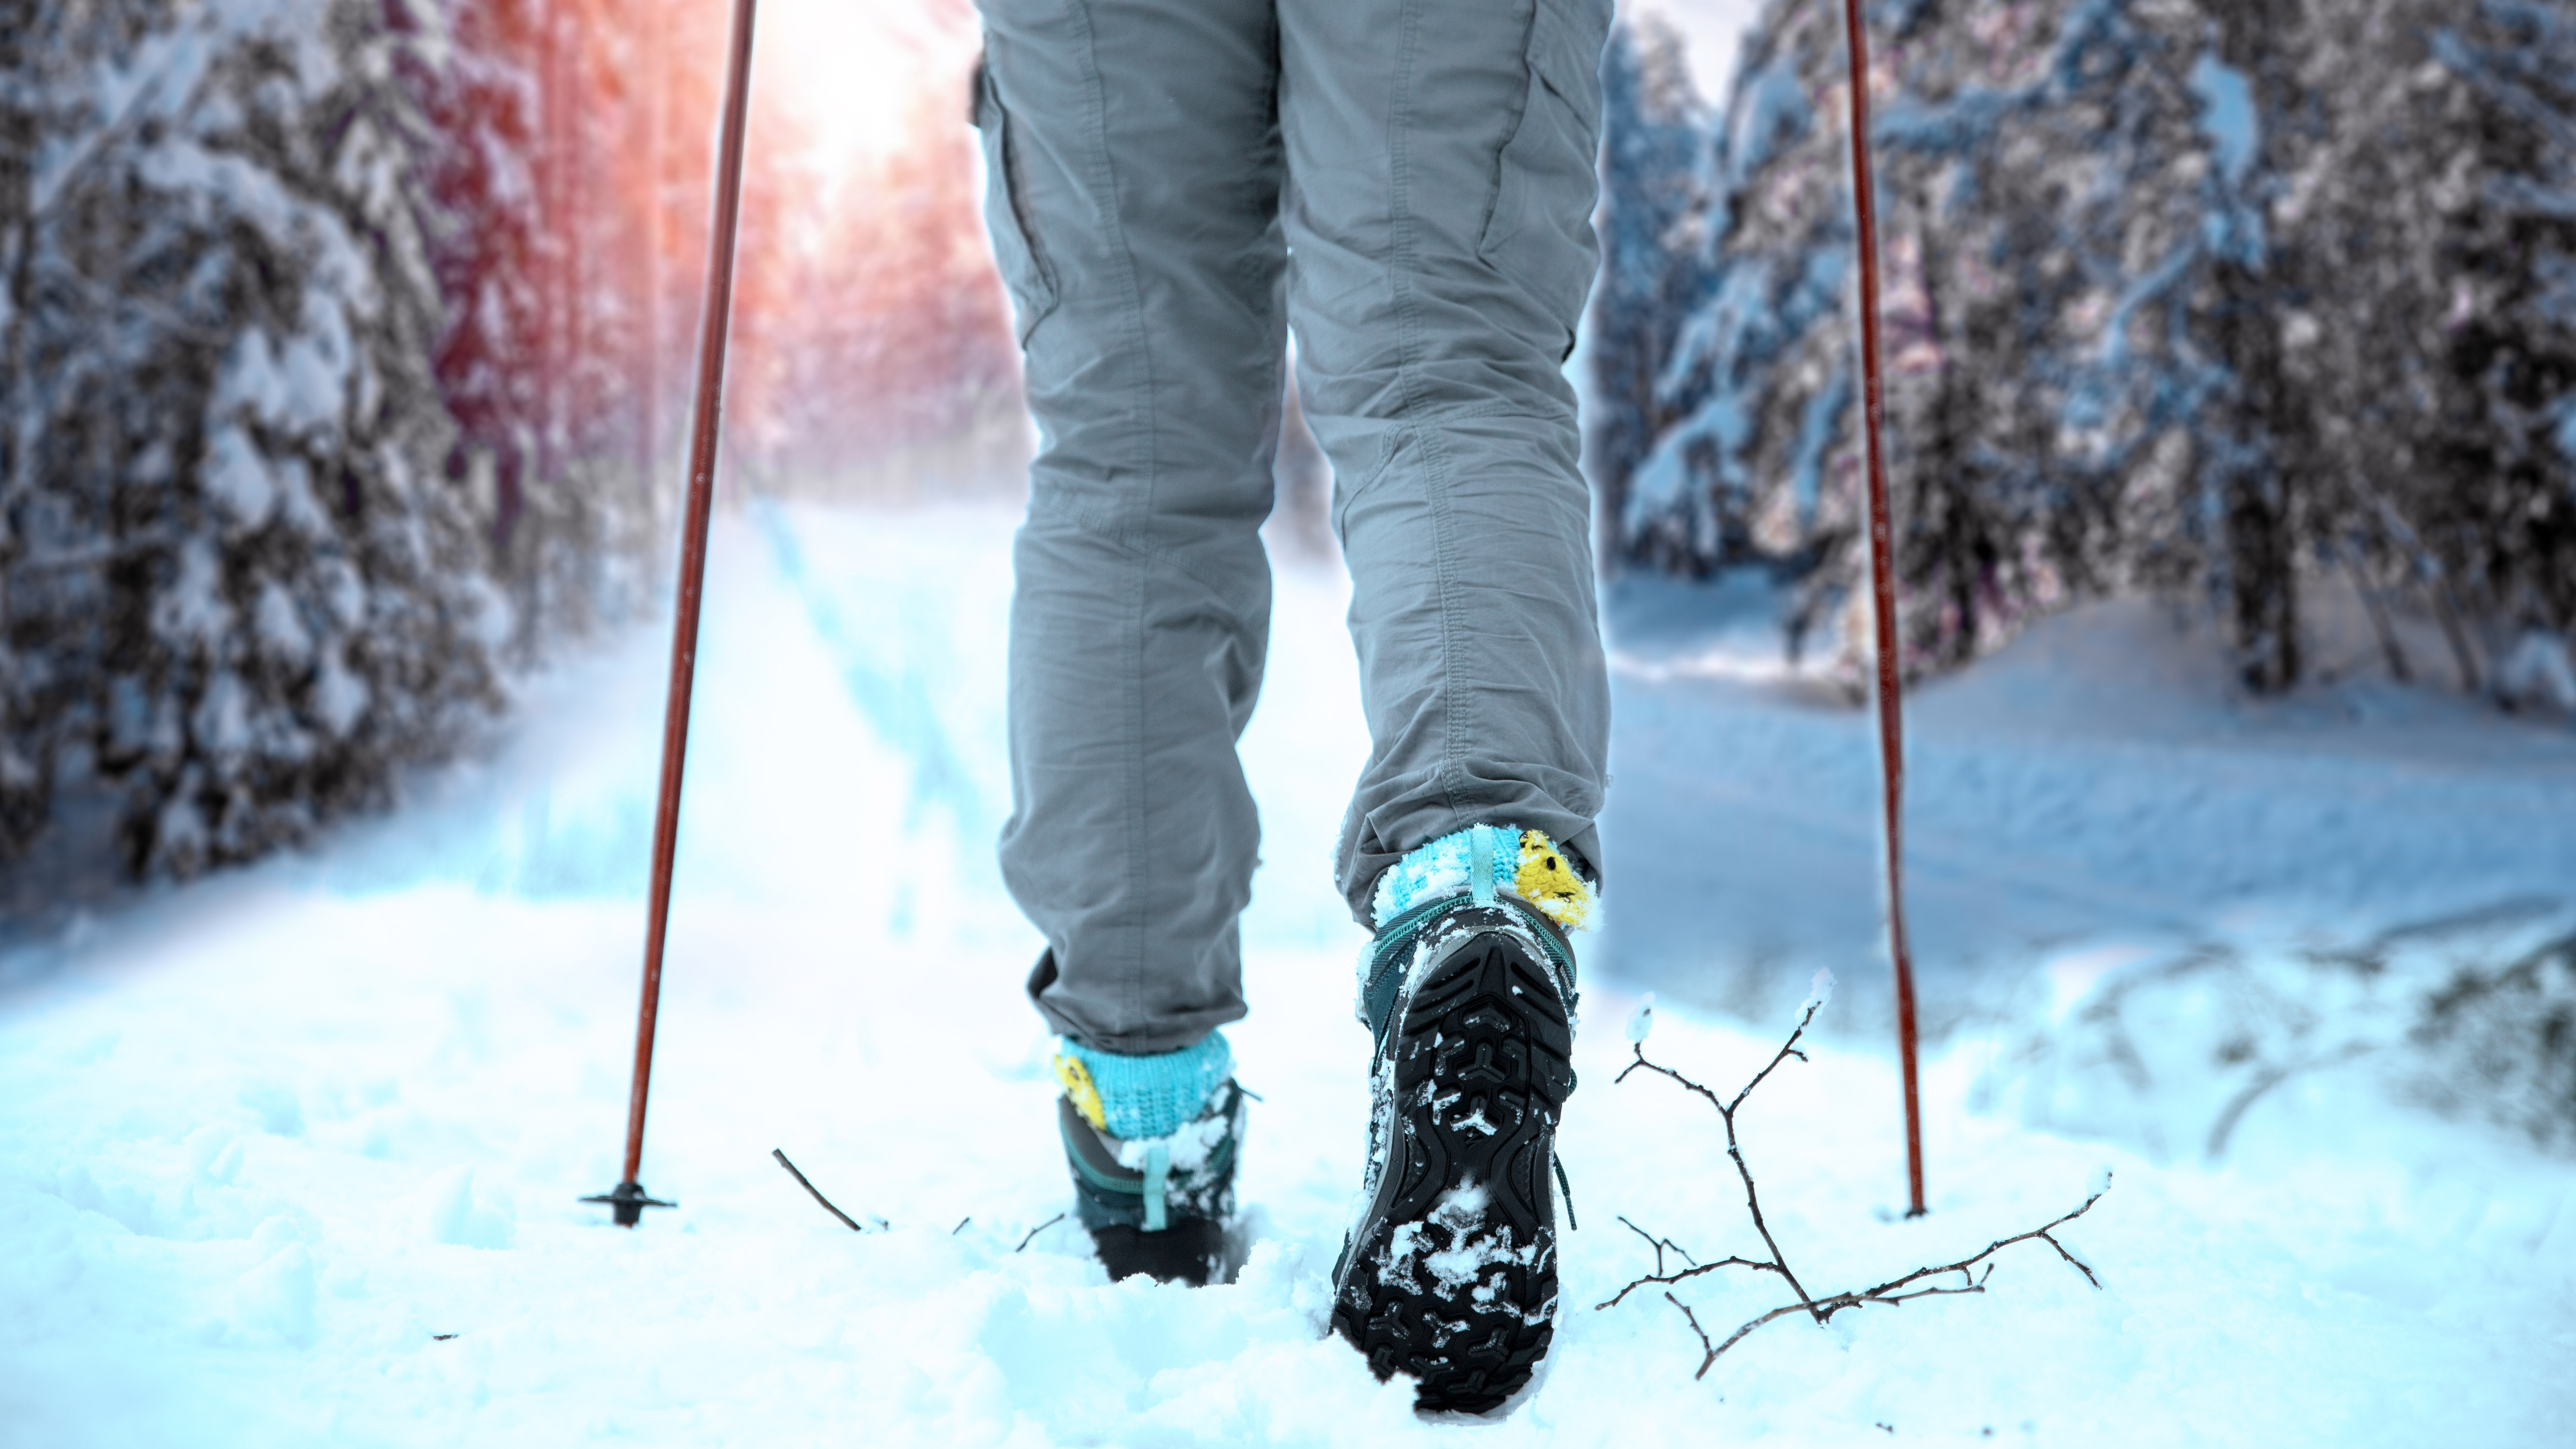 Reunir Menos que asistente Cómo impermeabilizar botas de montaña: cómo mantener los pies secos€€ -  outder